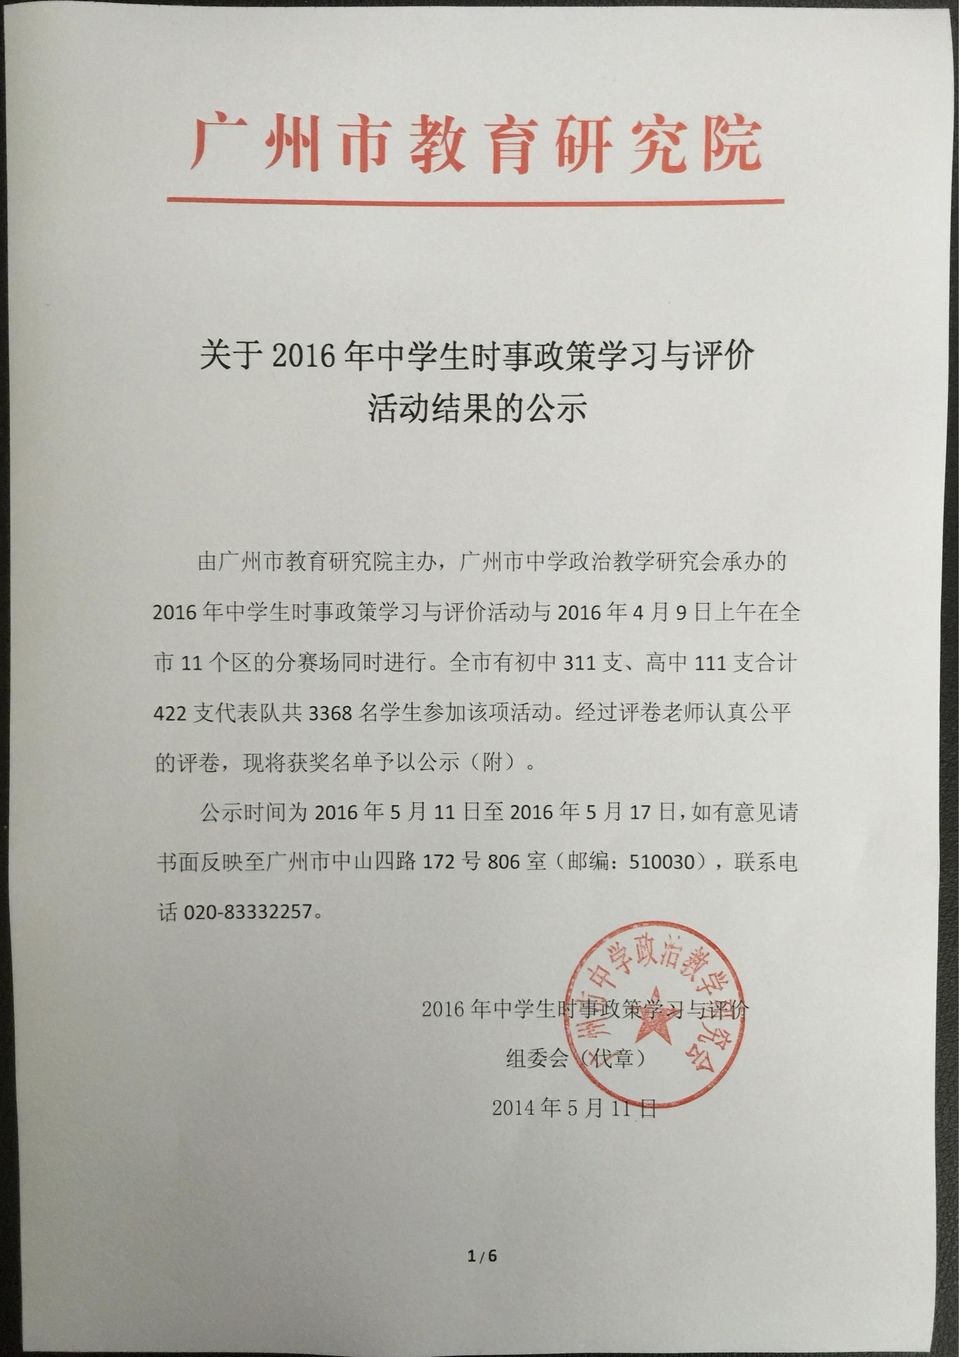 活 动 经 过 评 卷 老 师 认 真 公 平 的 评 卷, 现 将 获 奖 名 单 予 以 公 示 ( 附 ) 公 示 时 间 为 2016 年 5 月 11 日 至 2016 年 5 月 17 日, 如 有 意 见 请 书 面 反 映 至 广 州